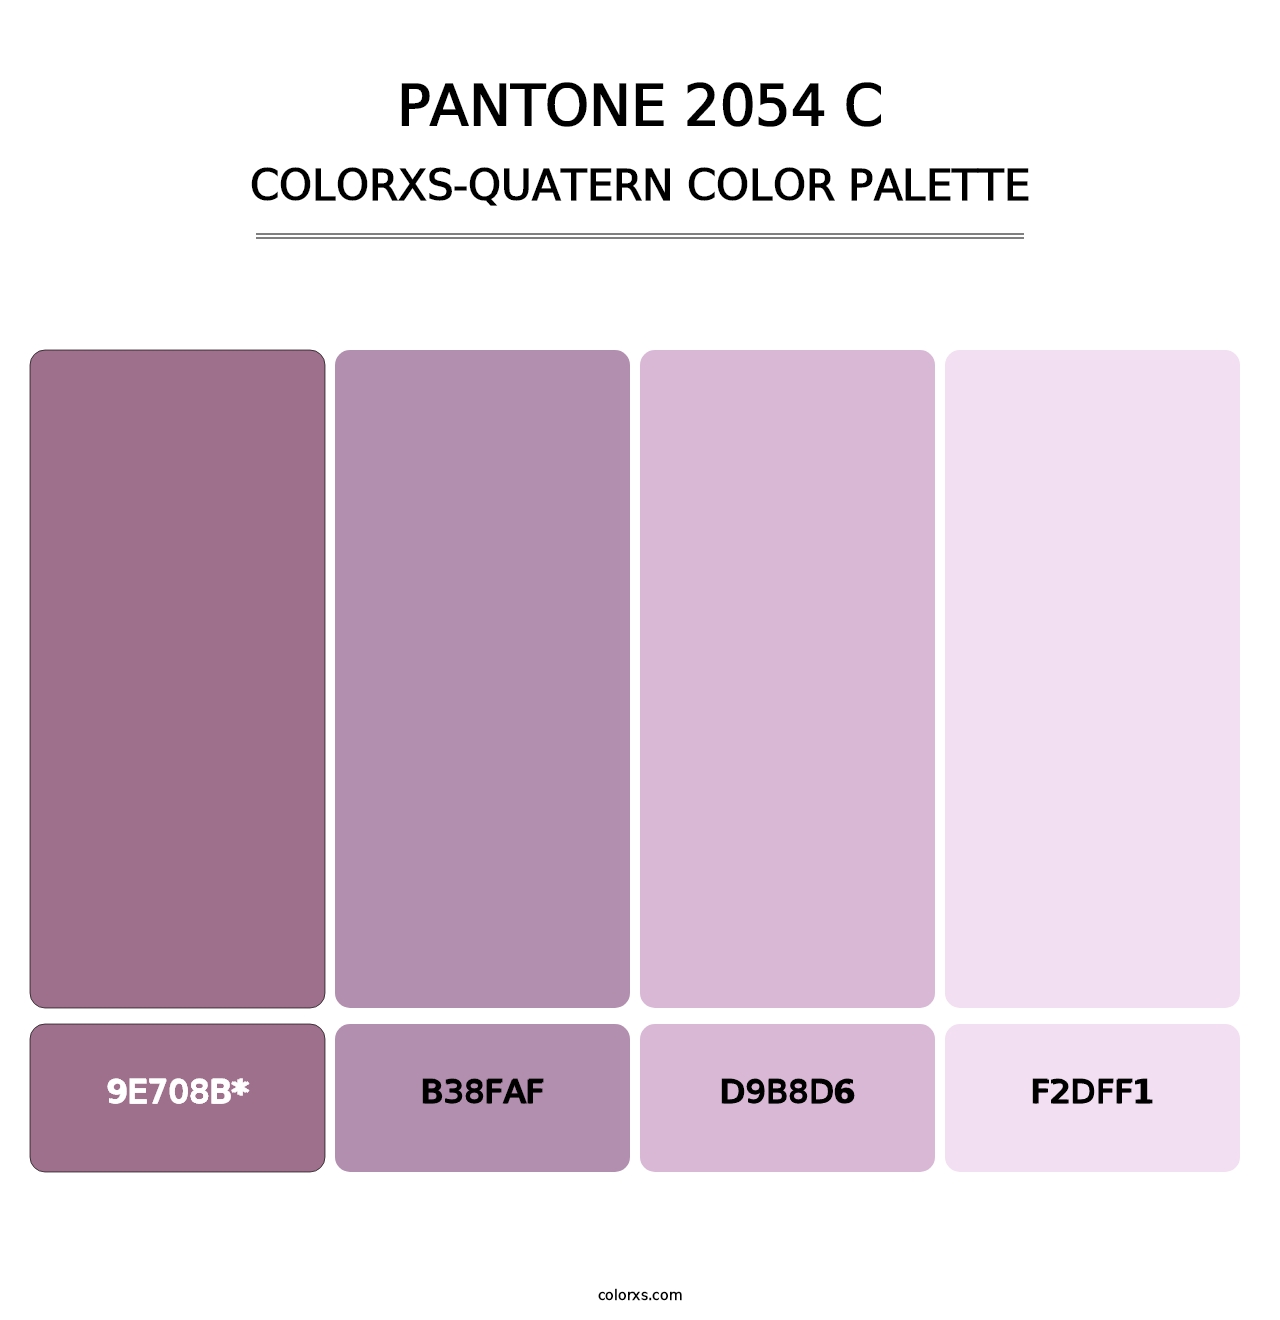 PANTONE 2054 C - Colorxs Quatern Palette